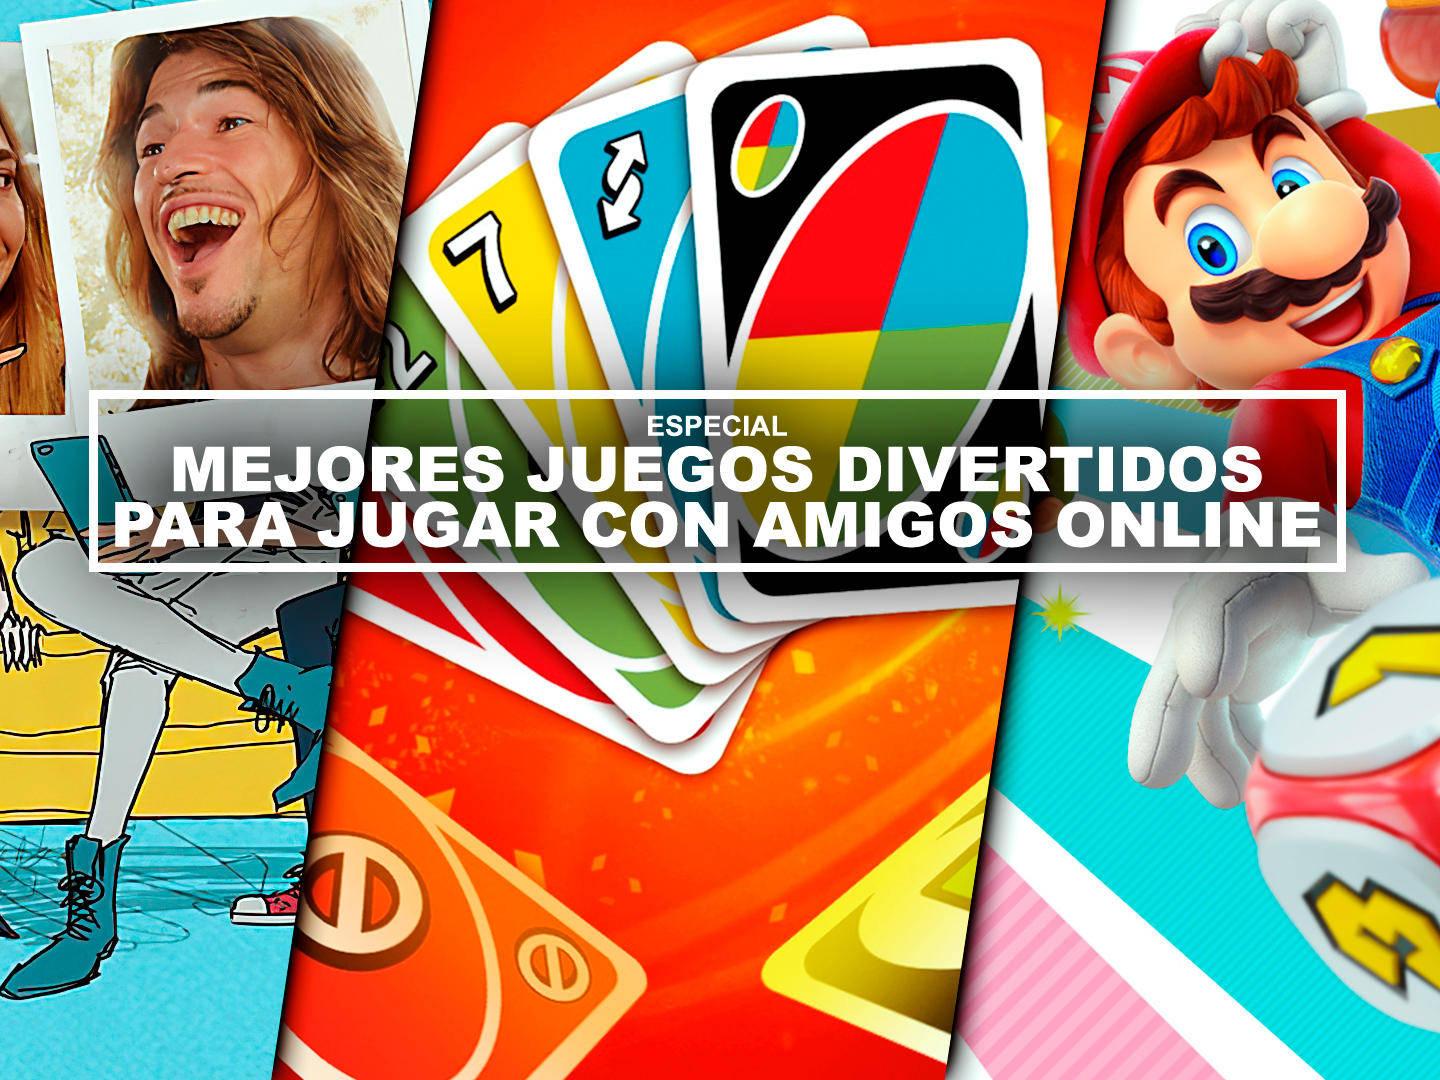 Juego De Dibujar Y Adivinar Online : Juegos En Linea 5 Alternativas Para Jugar En Tu Navegador ...